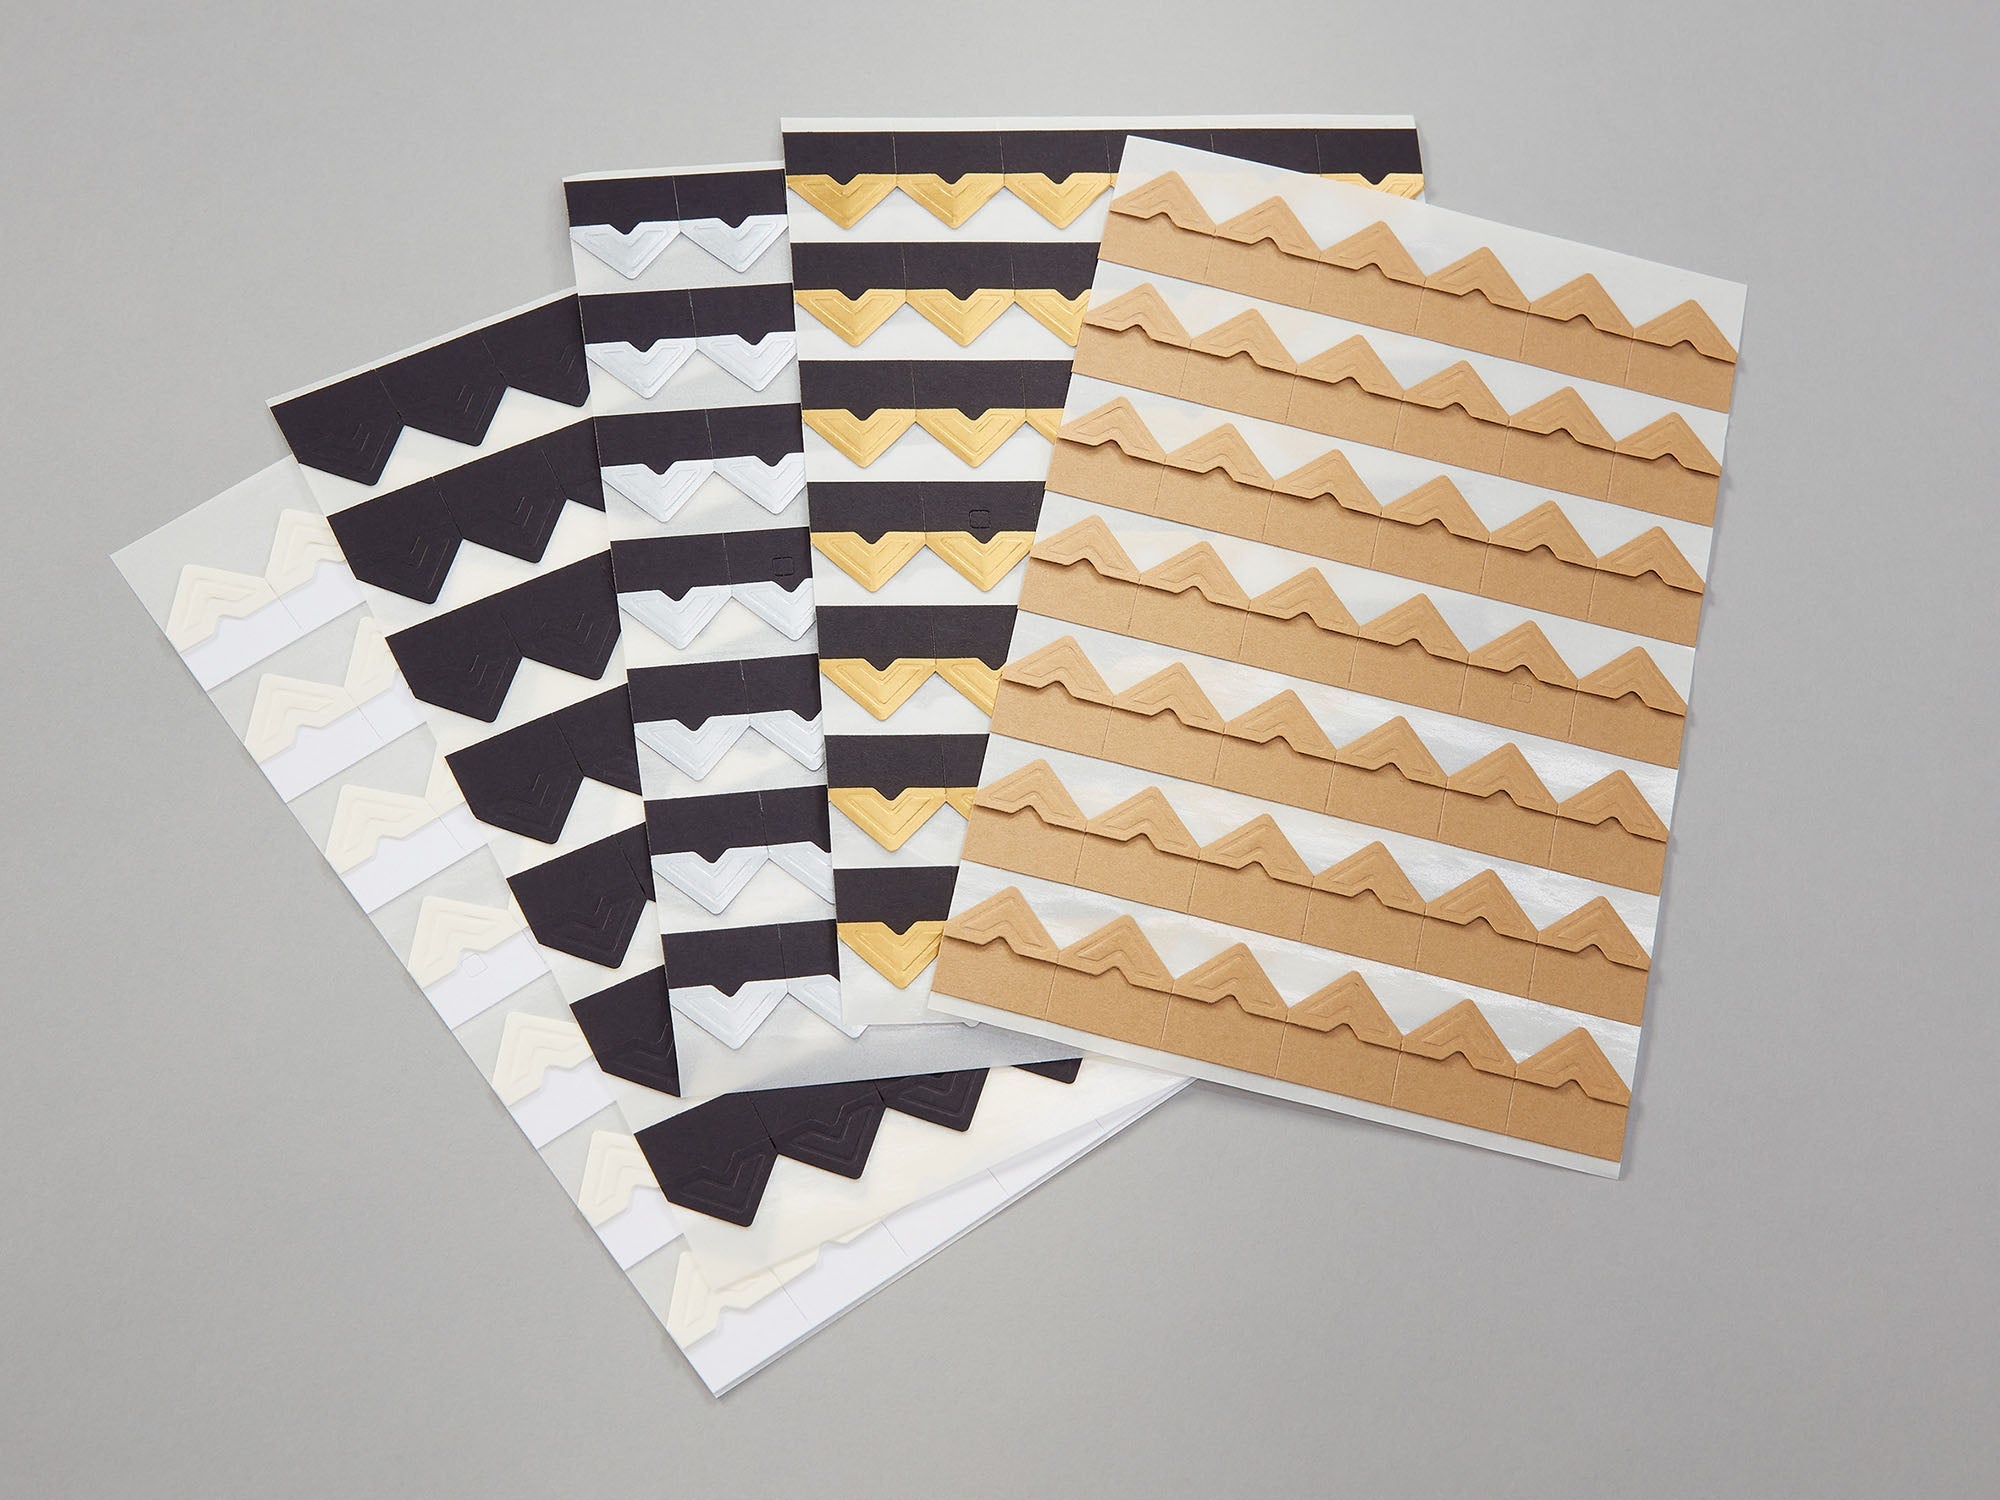 Scrapbook Adhesives Paper Photo Corners Self-Adhesive 108/PK Kraft